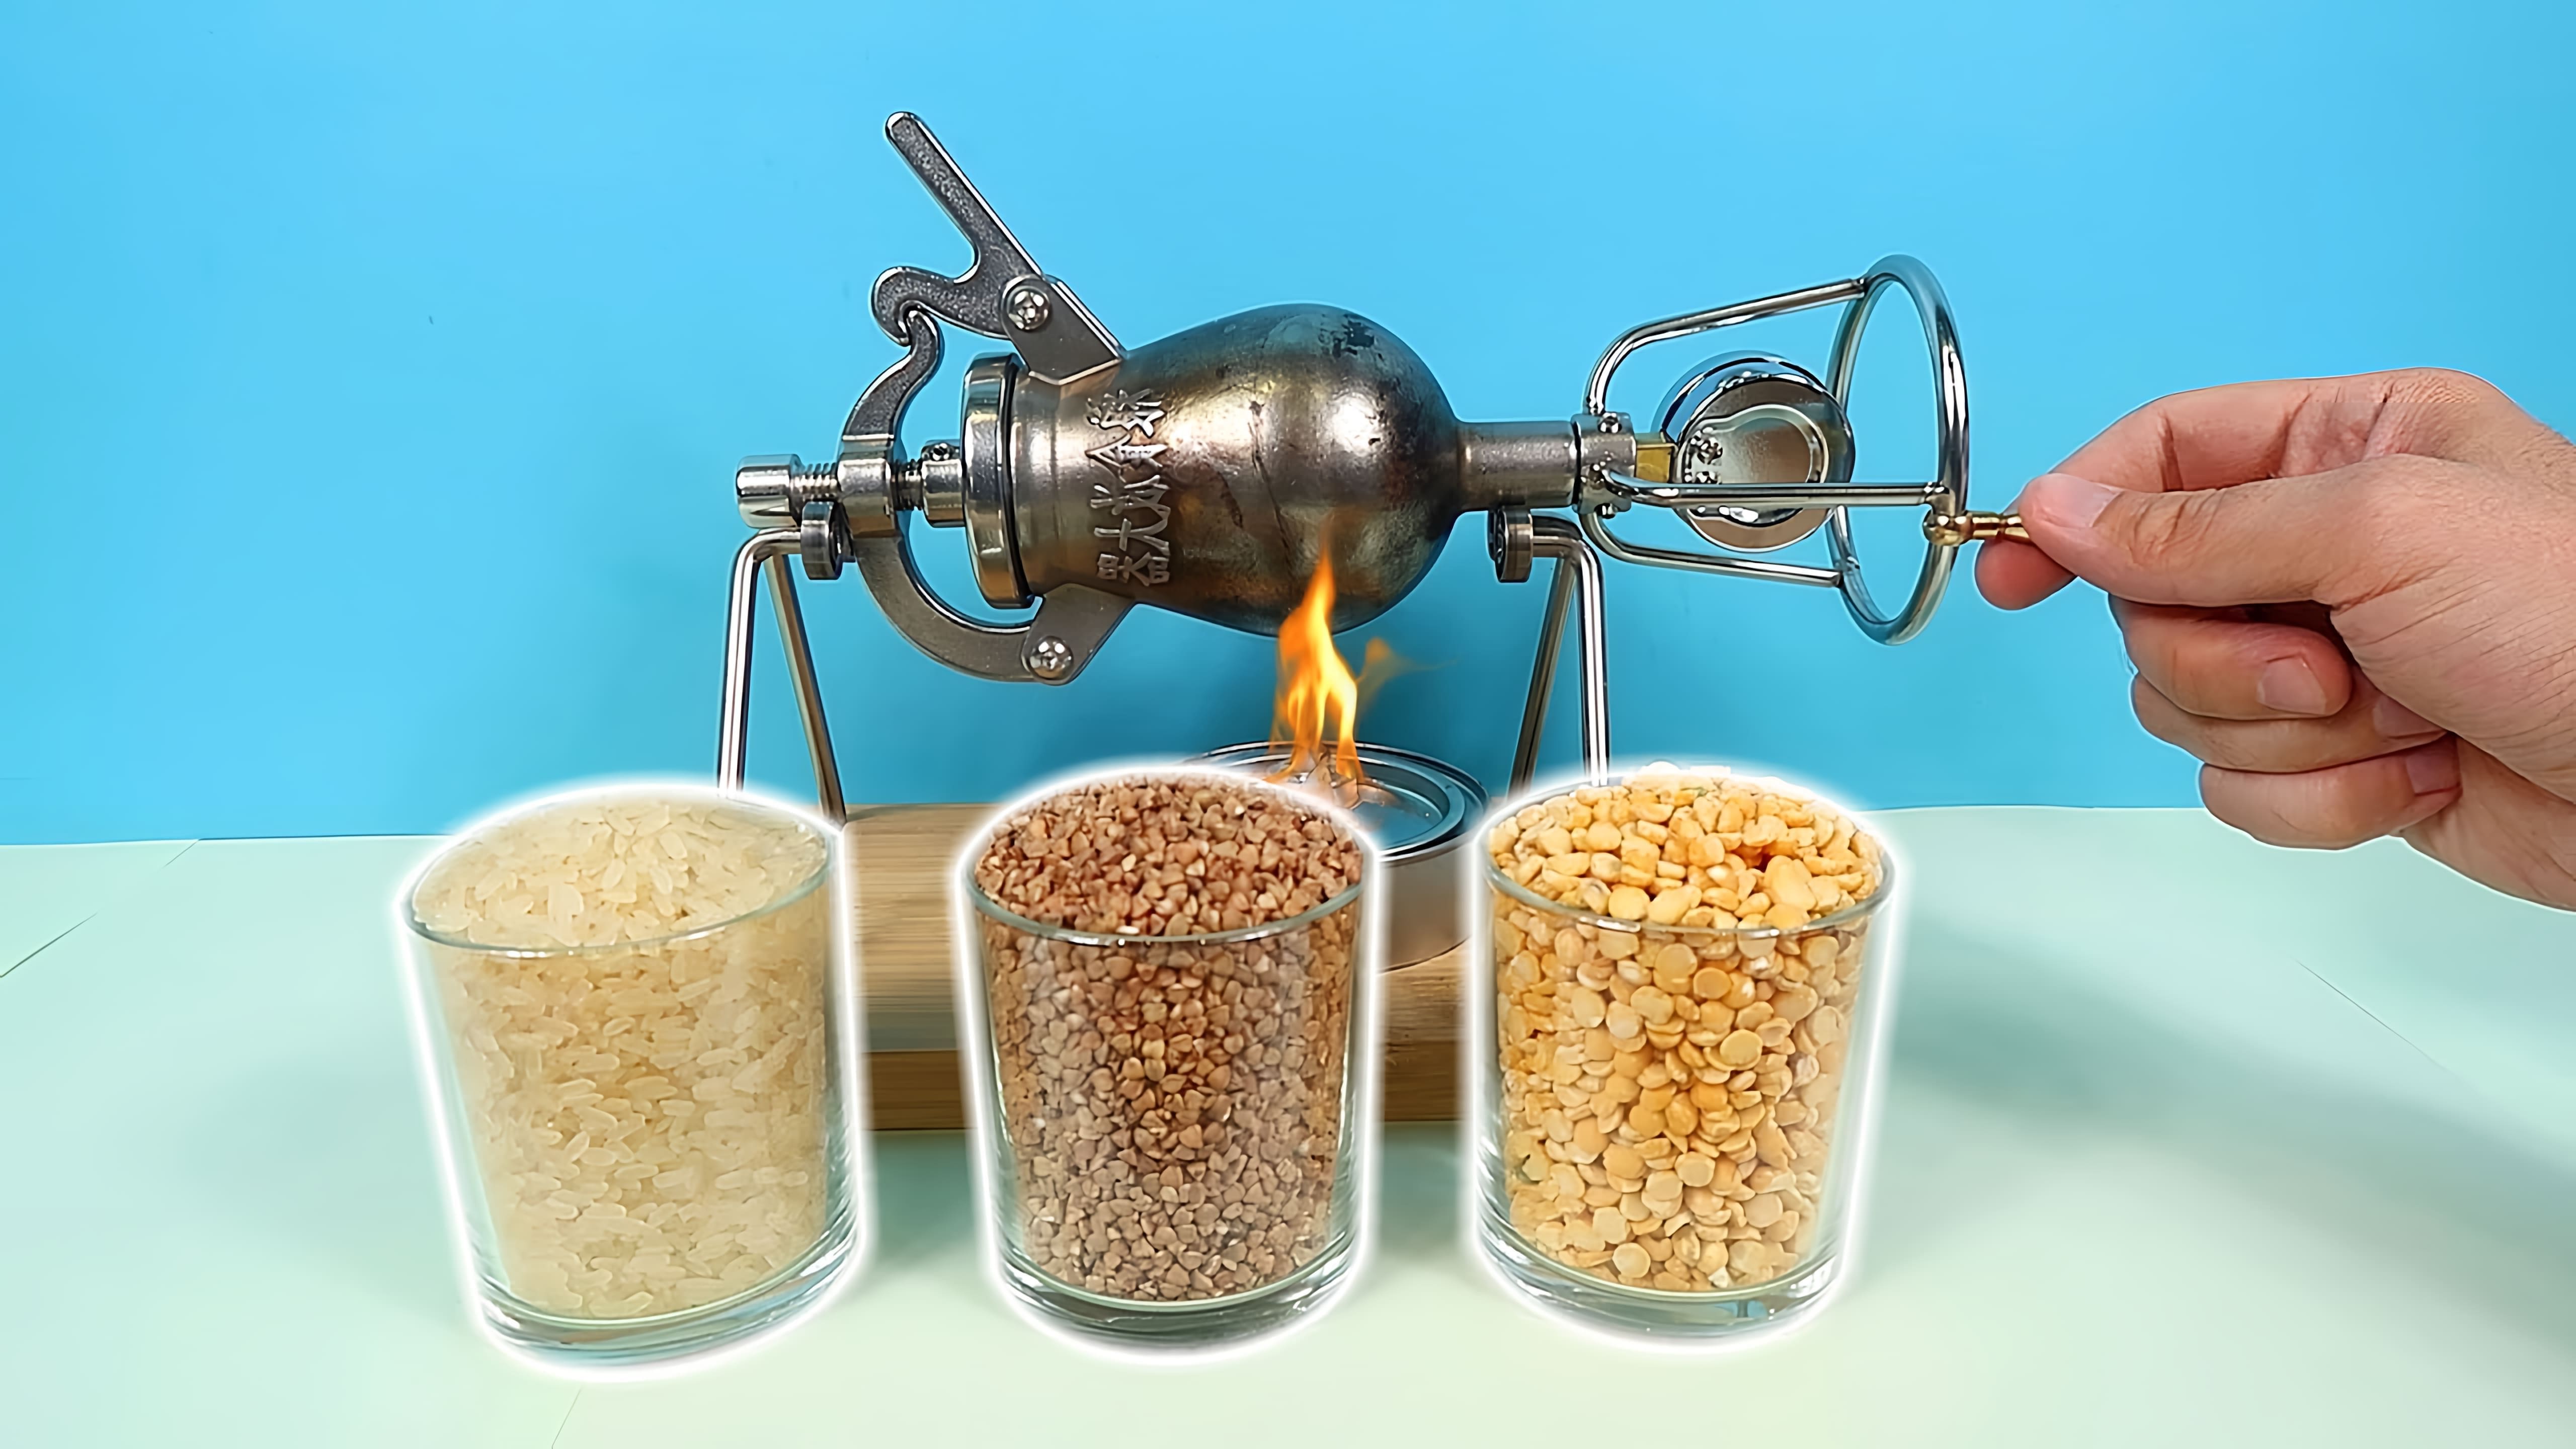 В этом видео демонстрируется работа китайского аппарата для приготовления попкорна